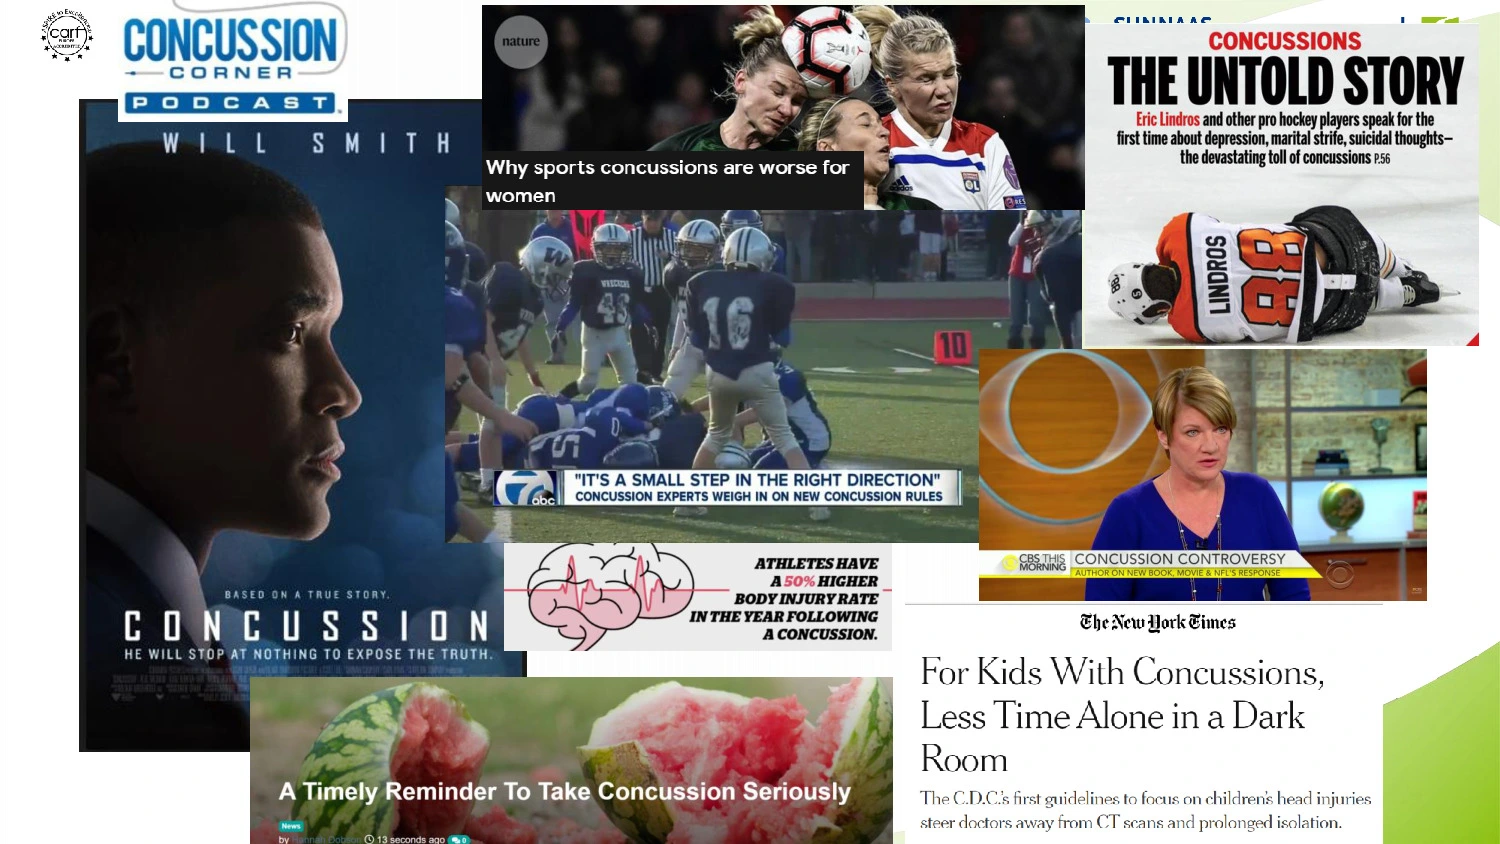 En kollage af billeder, bestående af forskellige sportsudøvere, tekster, og nyhedsartikler omkring hjernerystelse